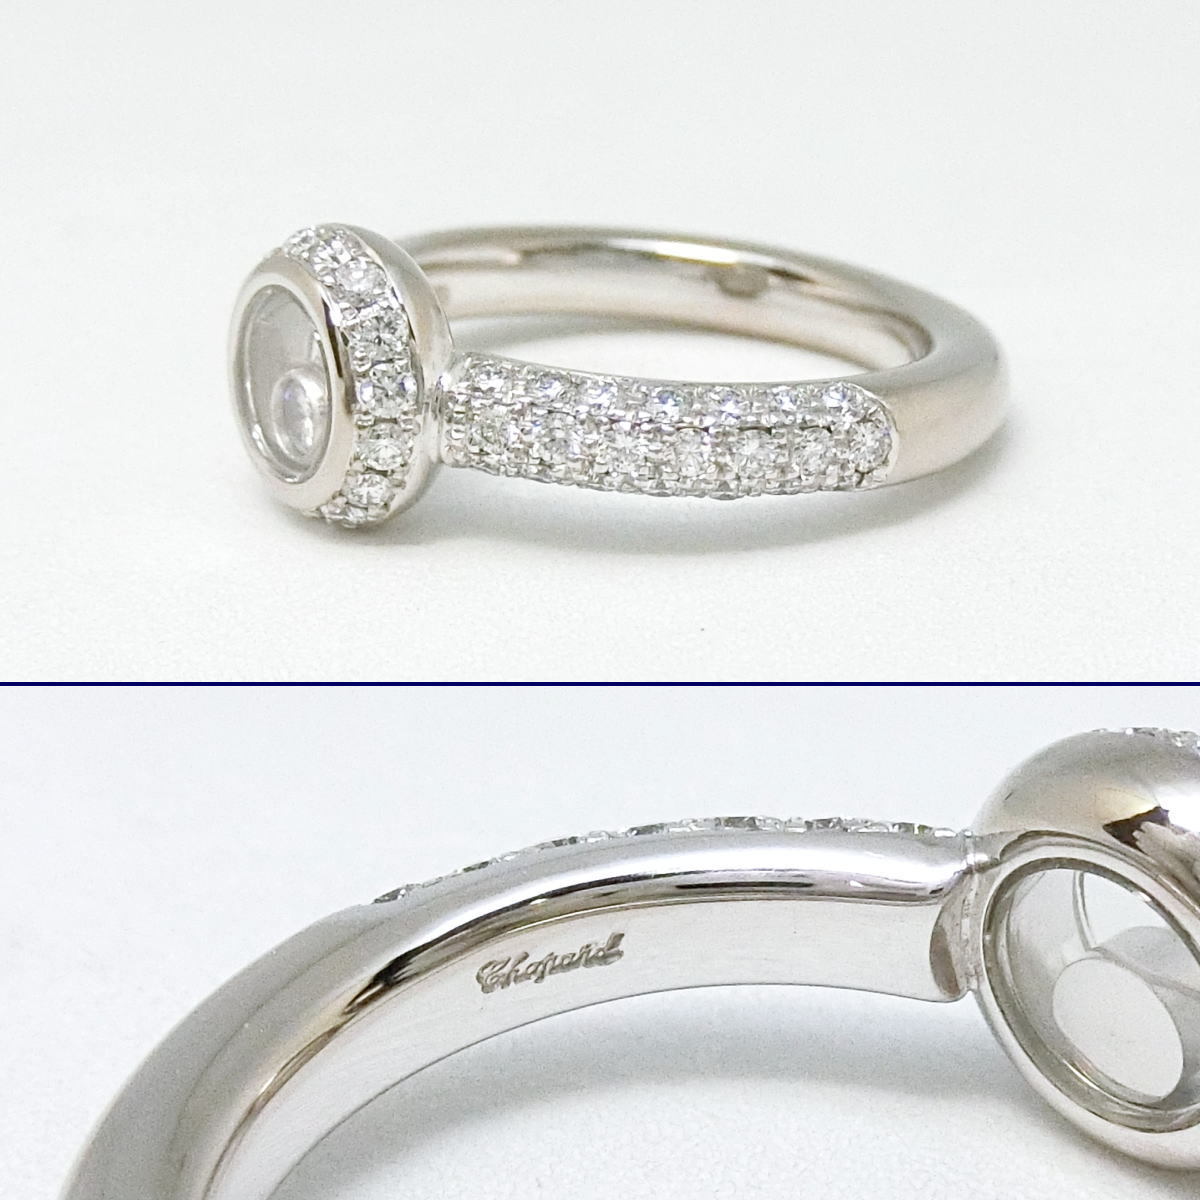 [ бесплатная доставка ] Chopard Chopard 750WG happy бриллиант 1P diamond / раунд кольцо с бриллиантом 9 номер 82/2902-20* с гарантией * прекрасный товар 